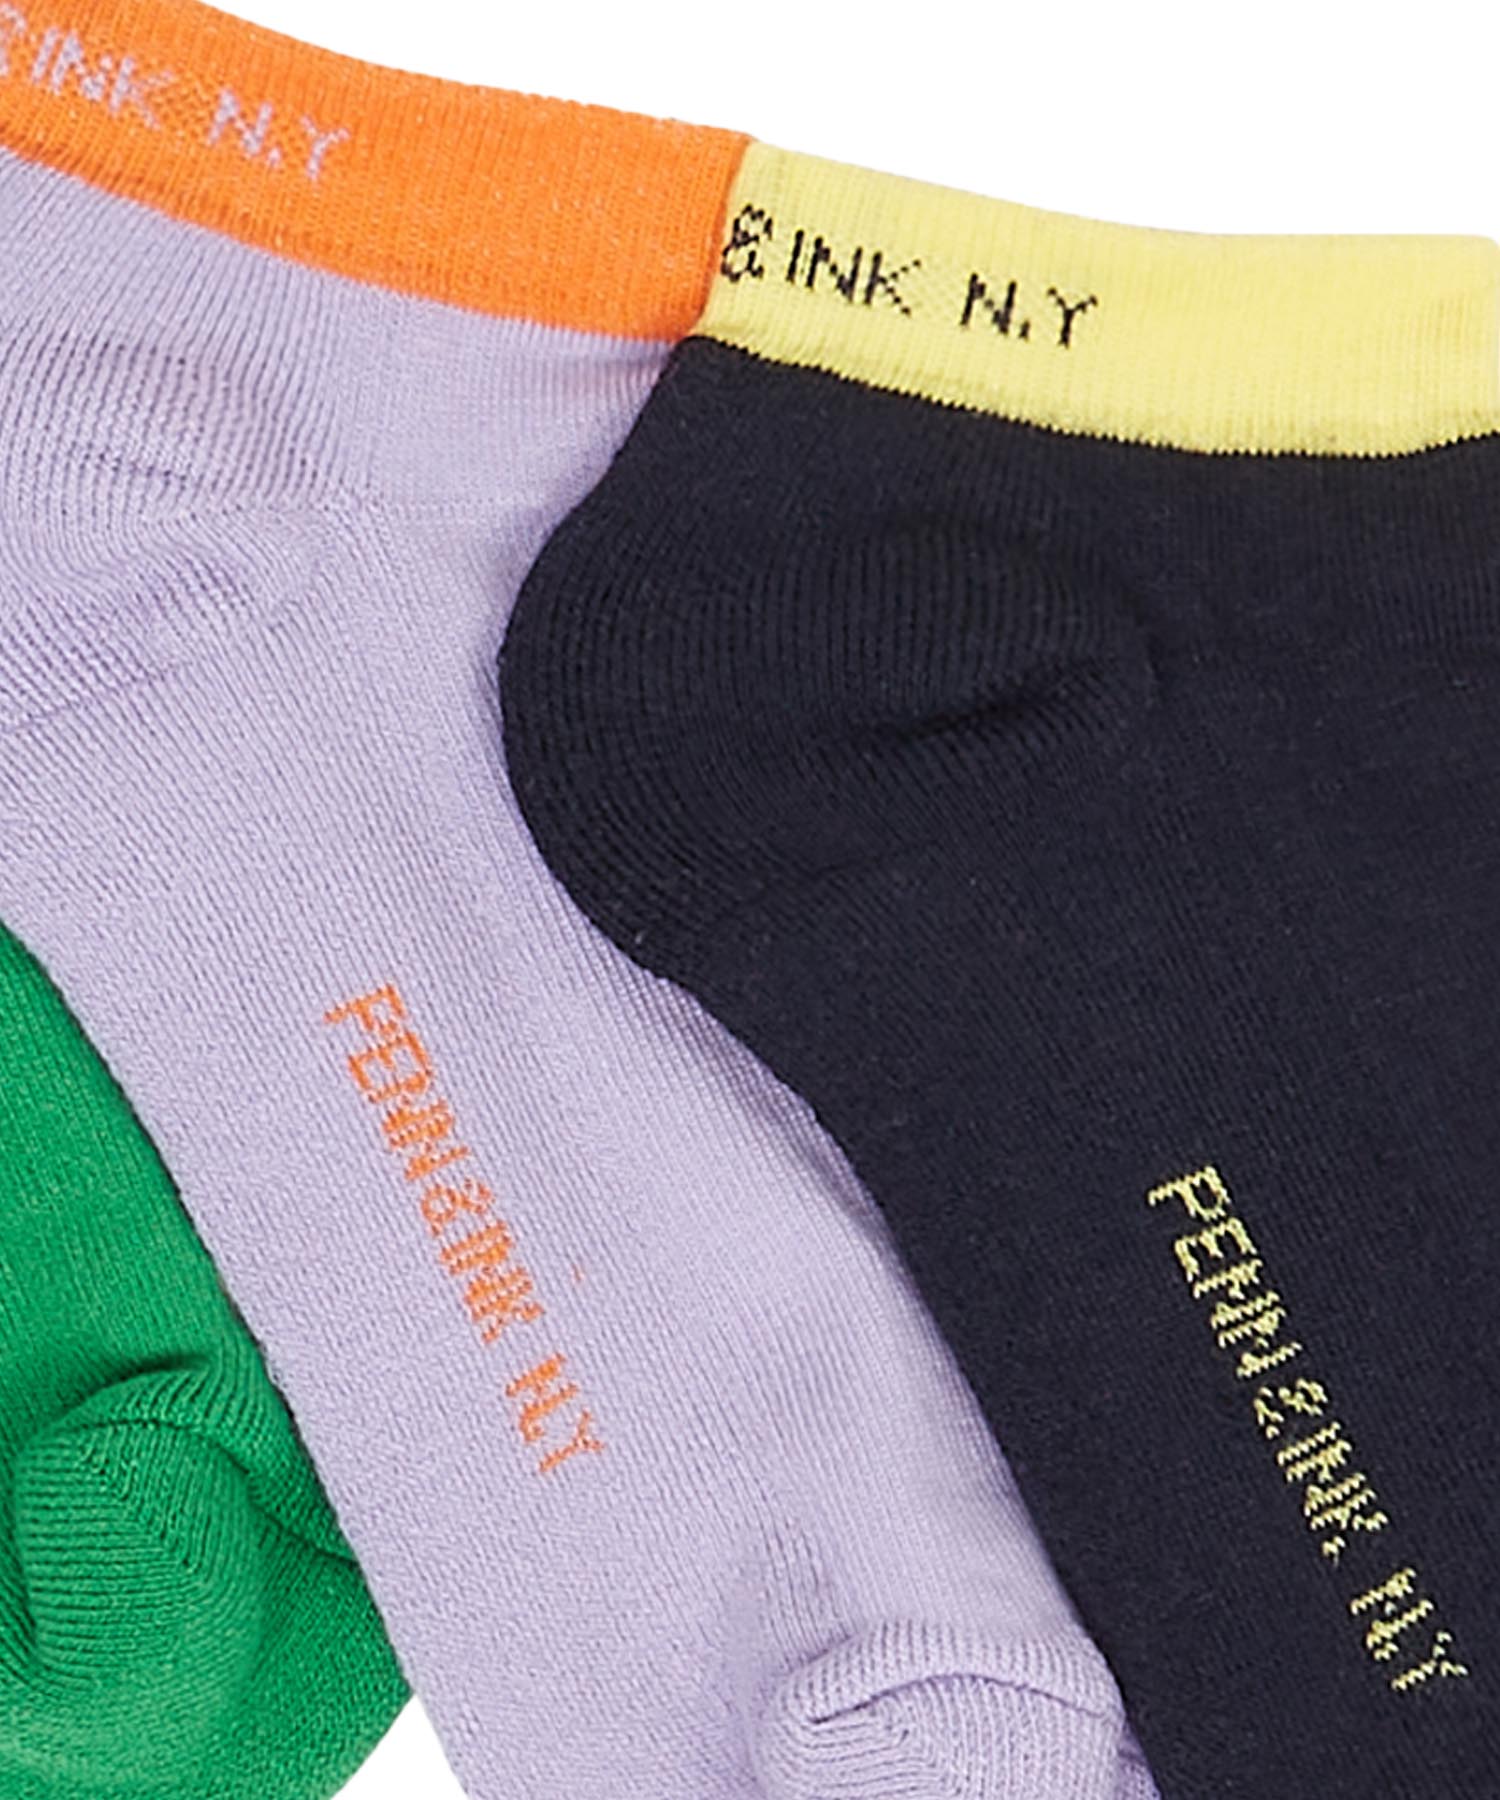 Penn & Ink Socken im 3-er Pack